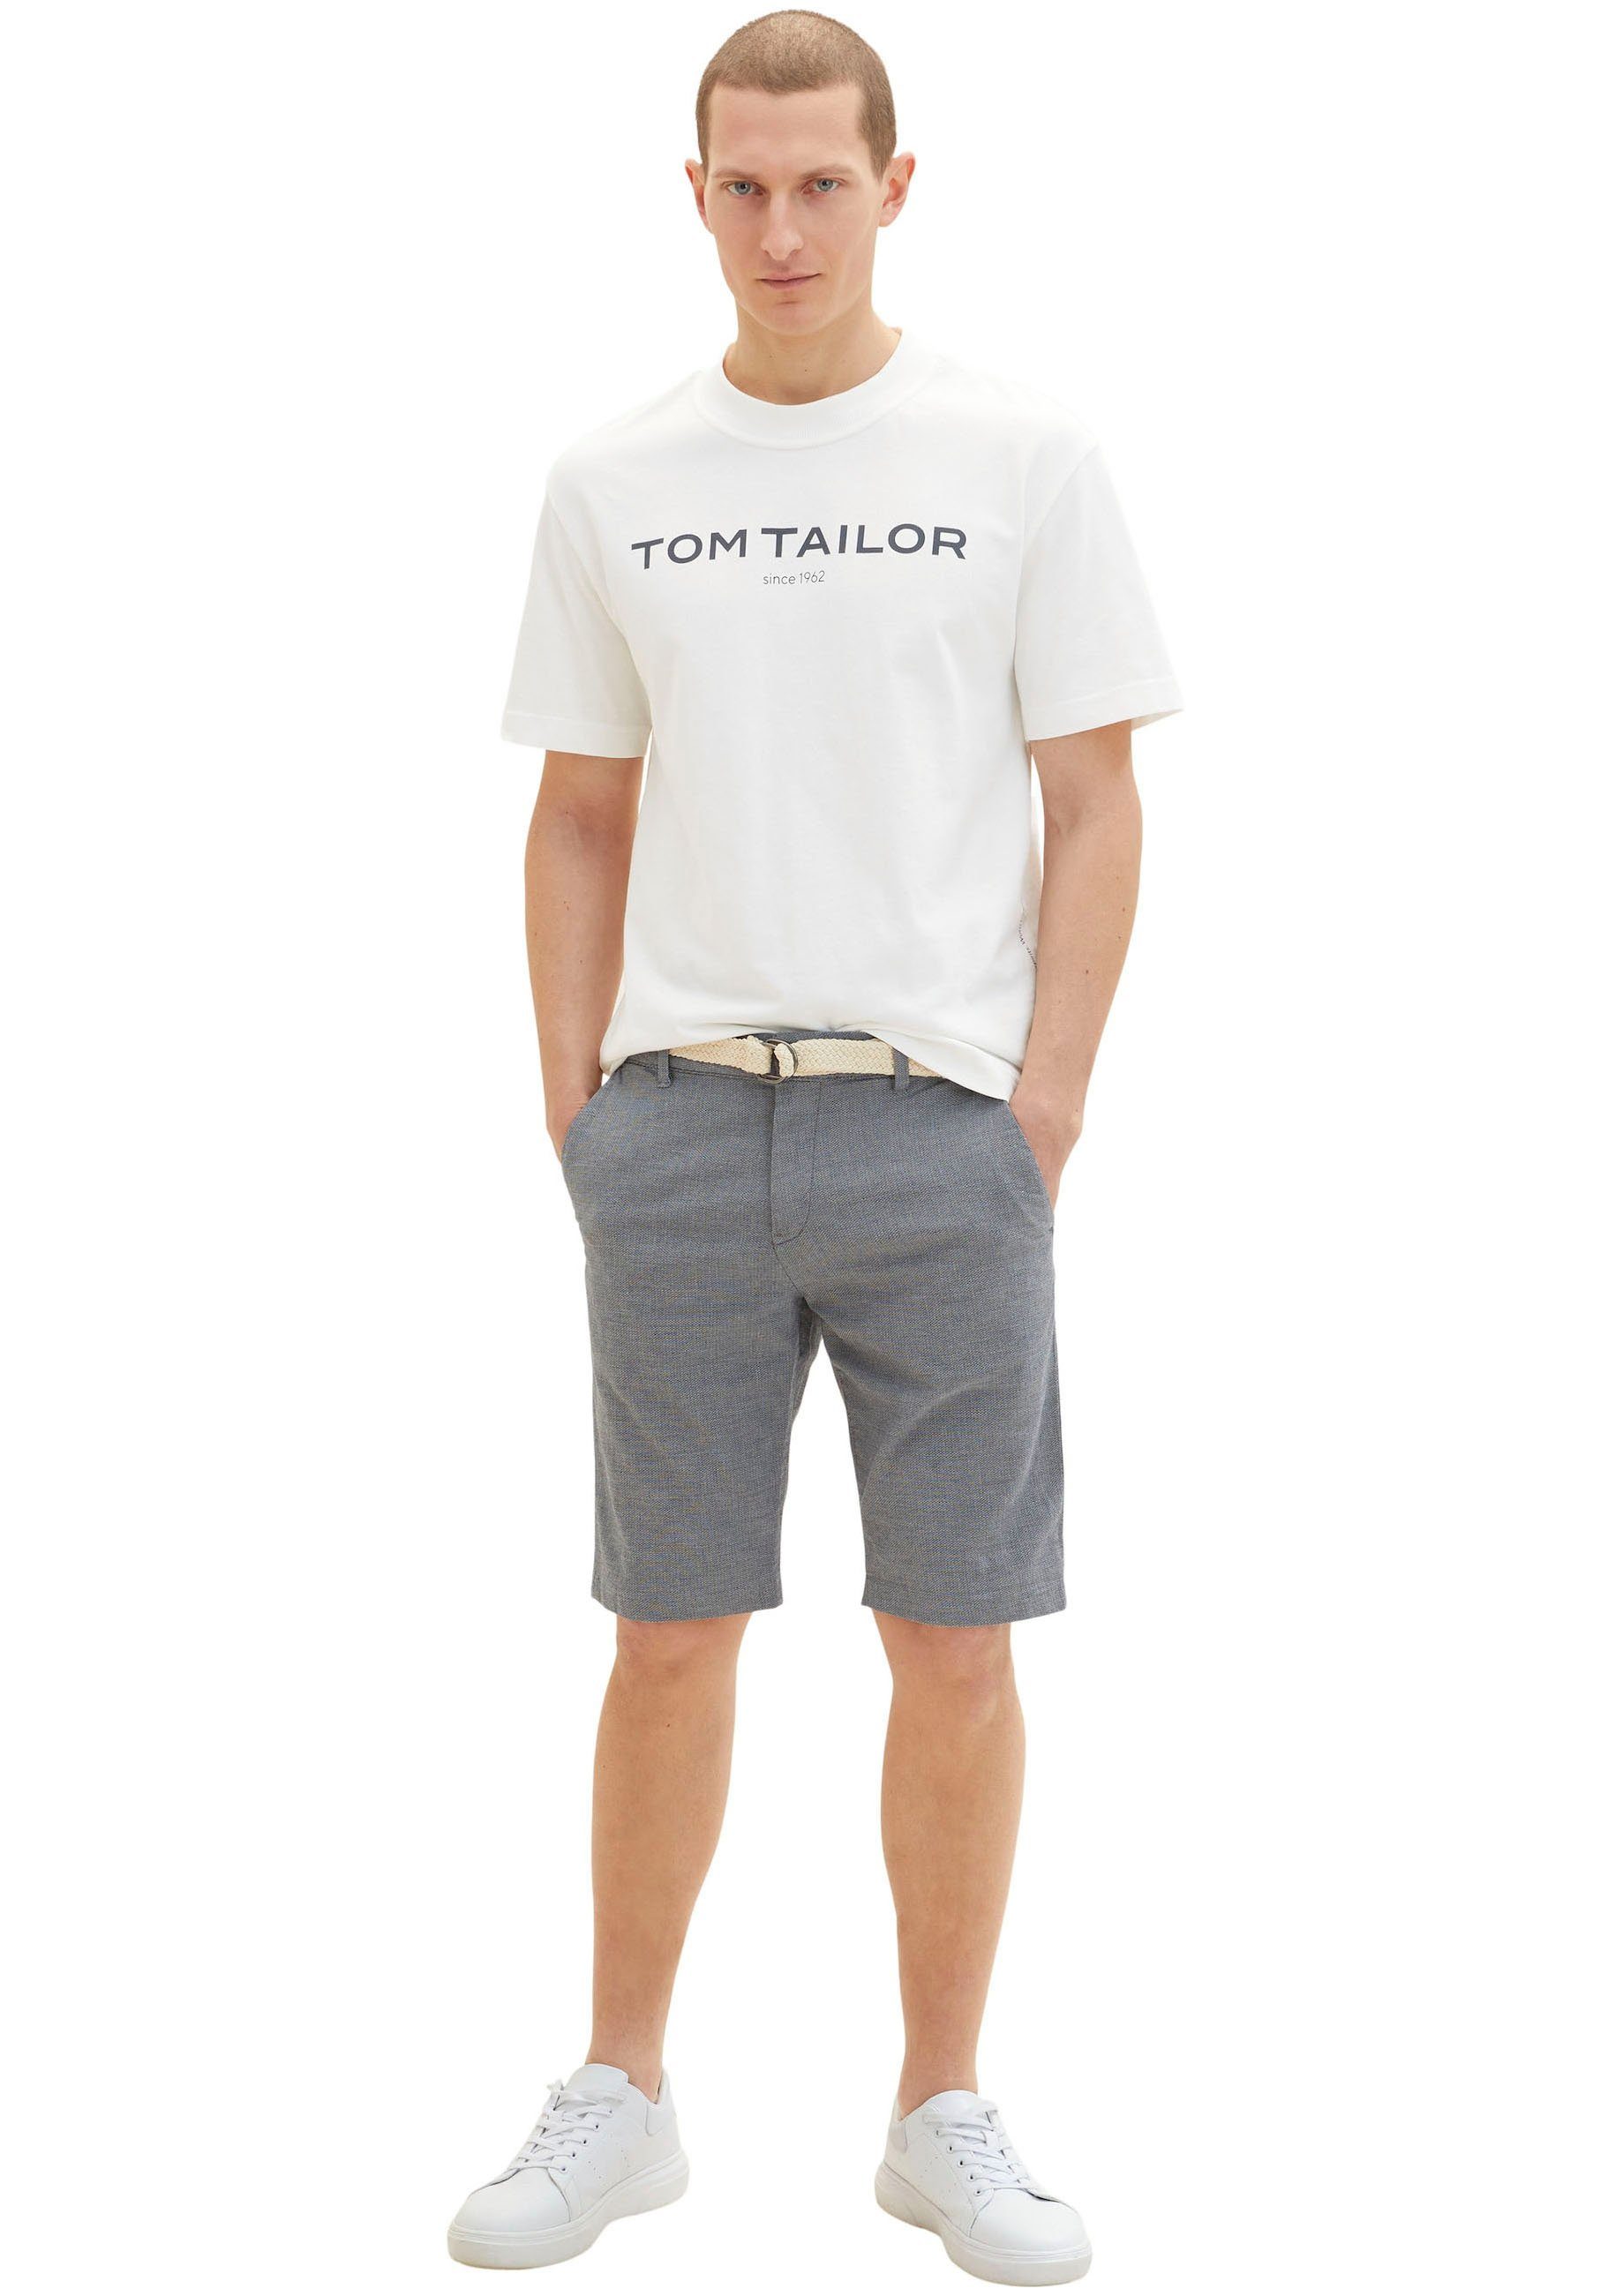 TOM TAILOR Shorts navy white